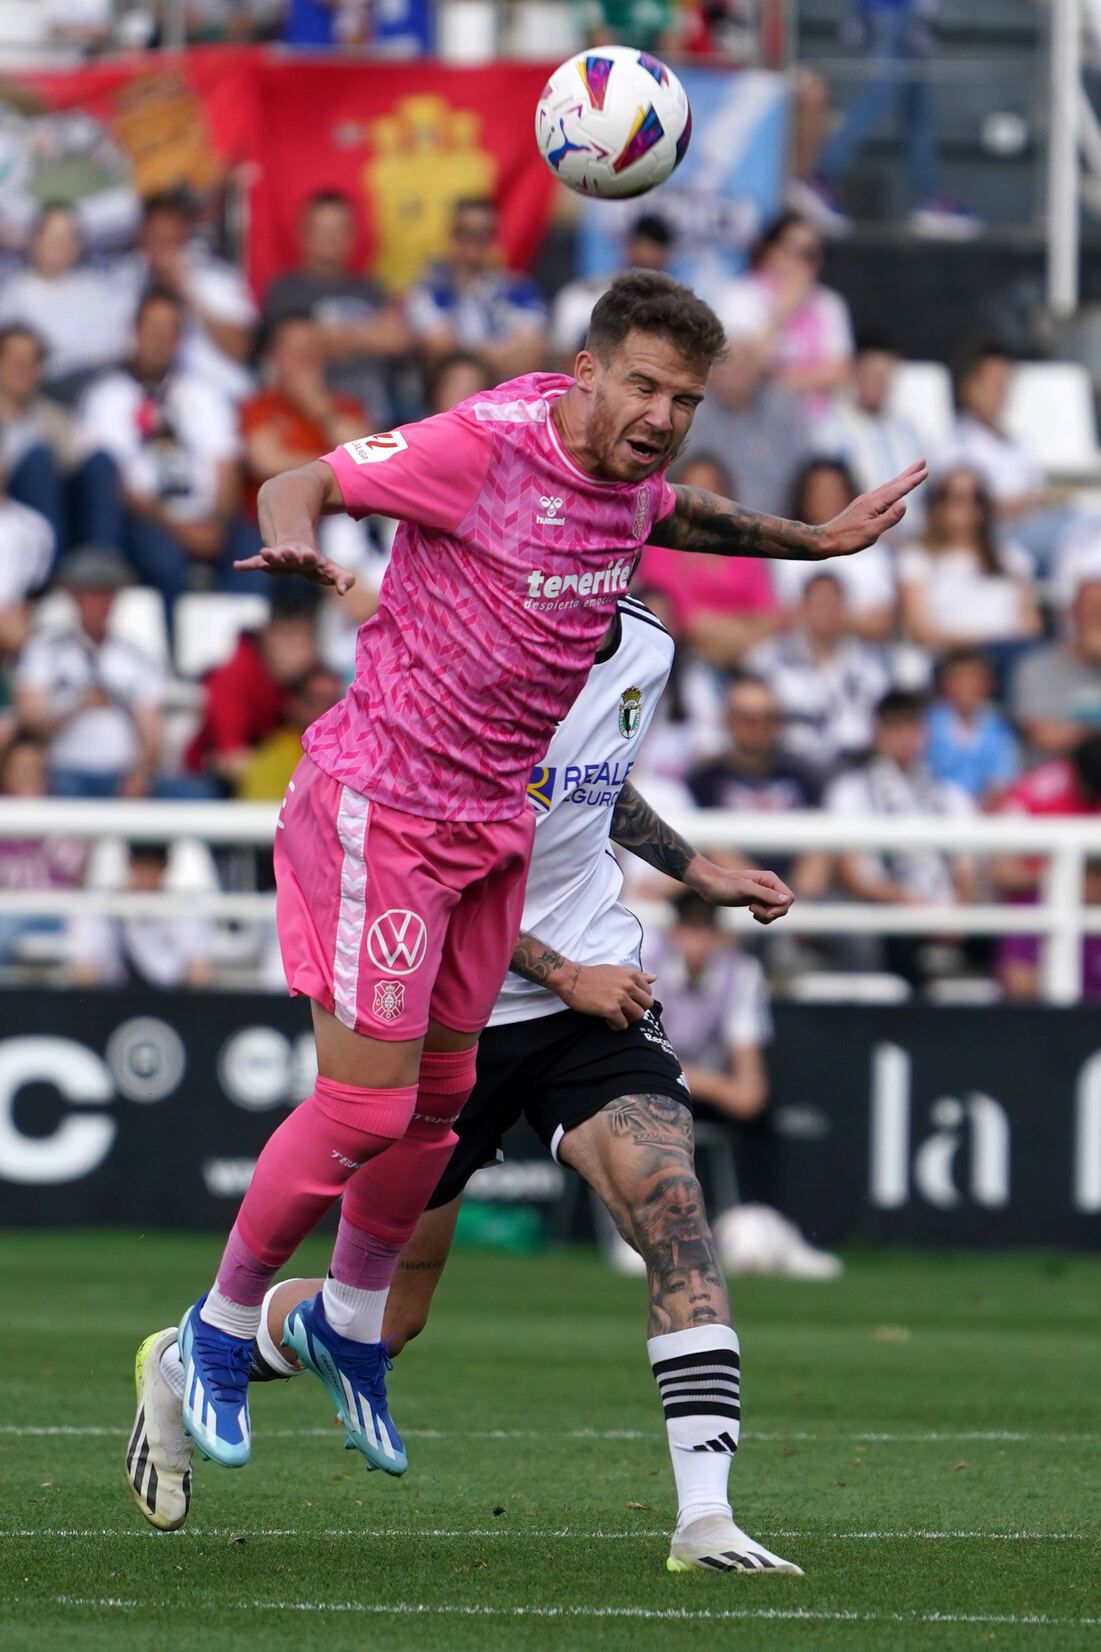 El partido entre el Burgos y el Tenerife. en imágenes